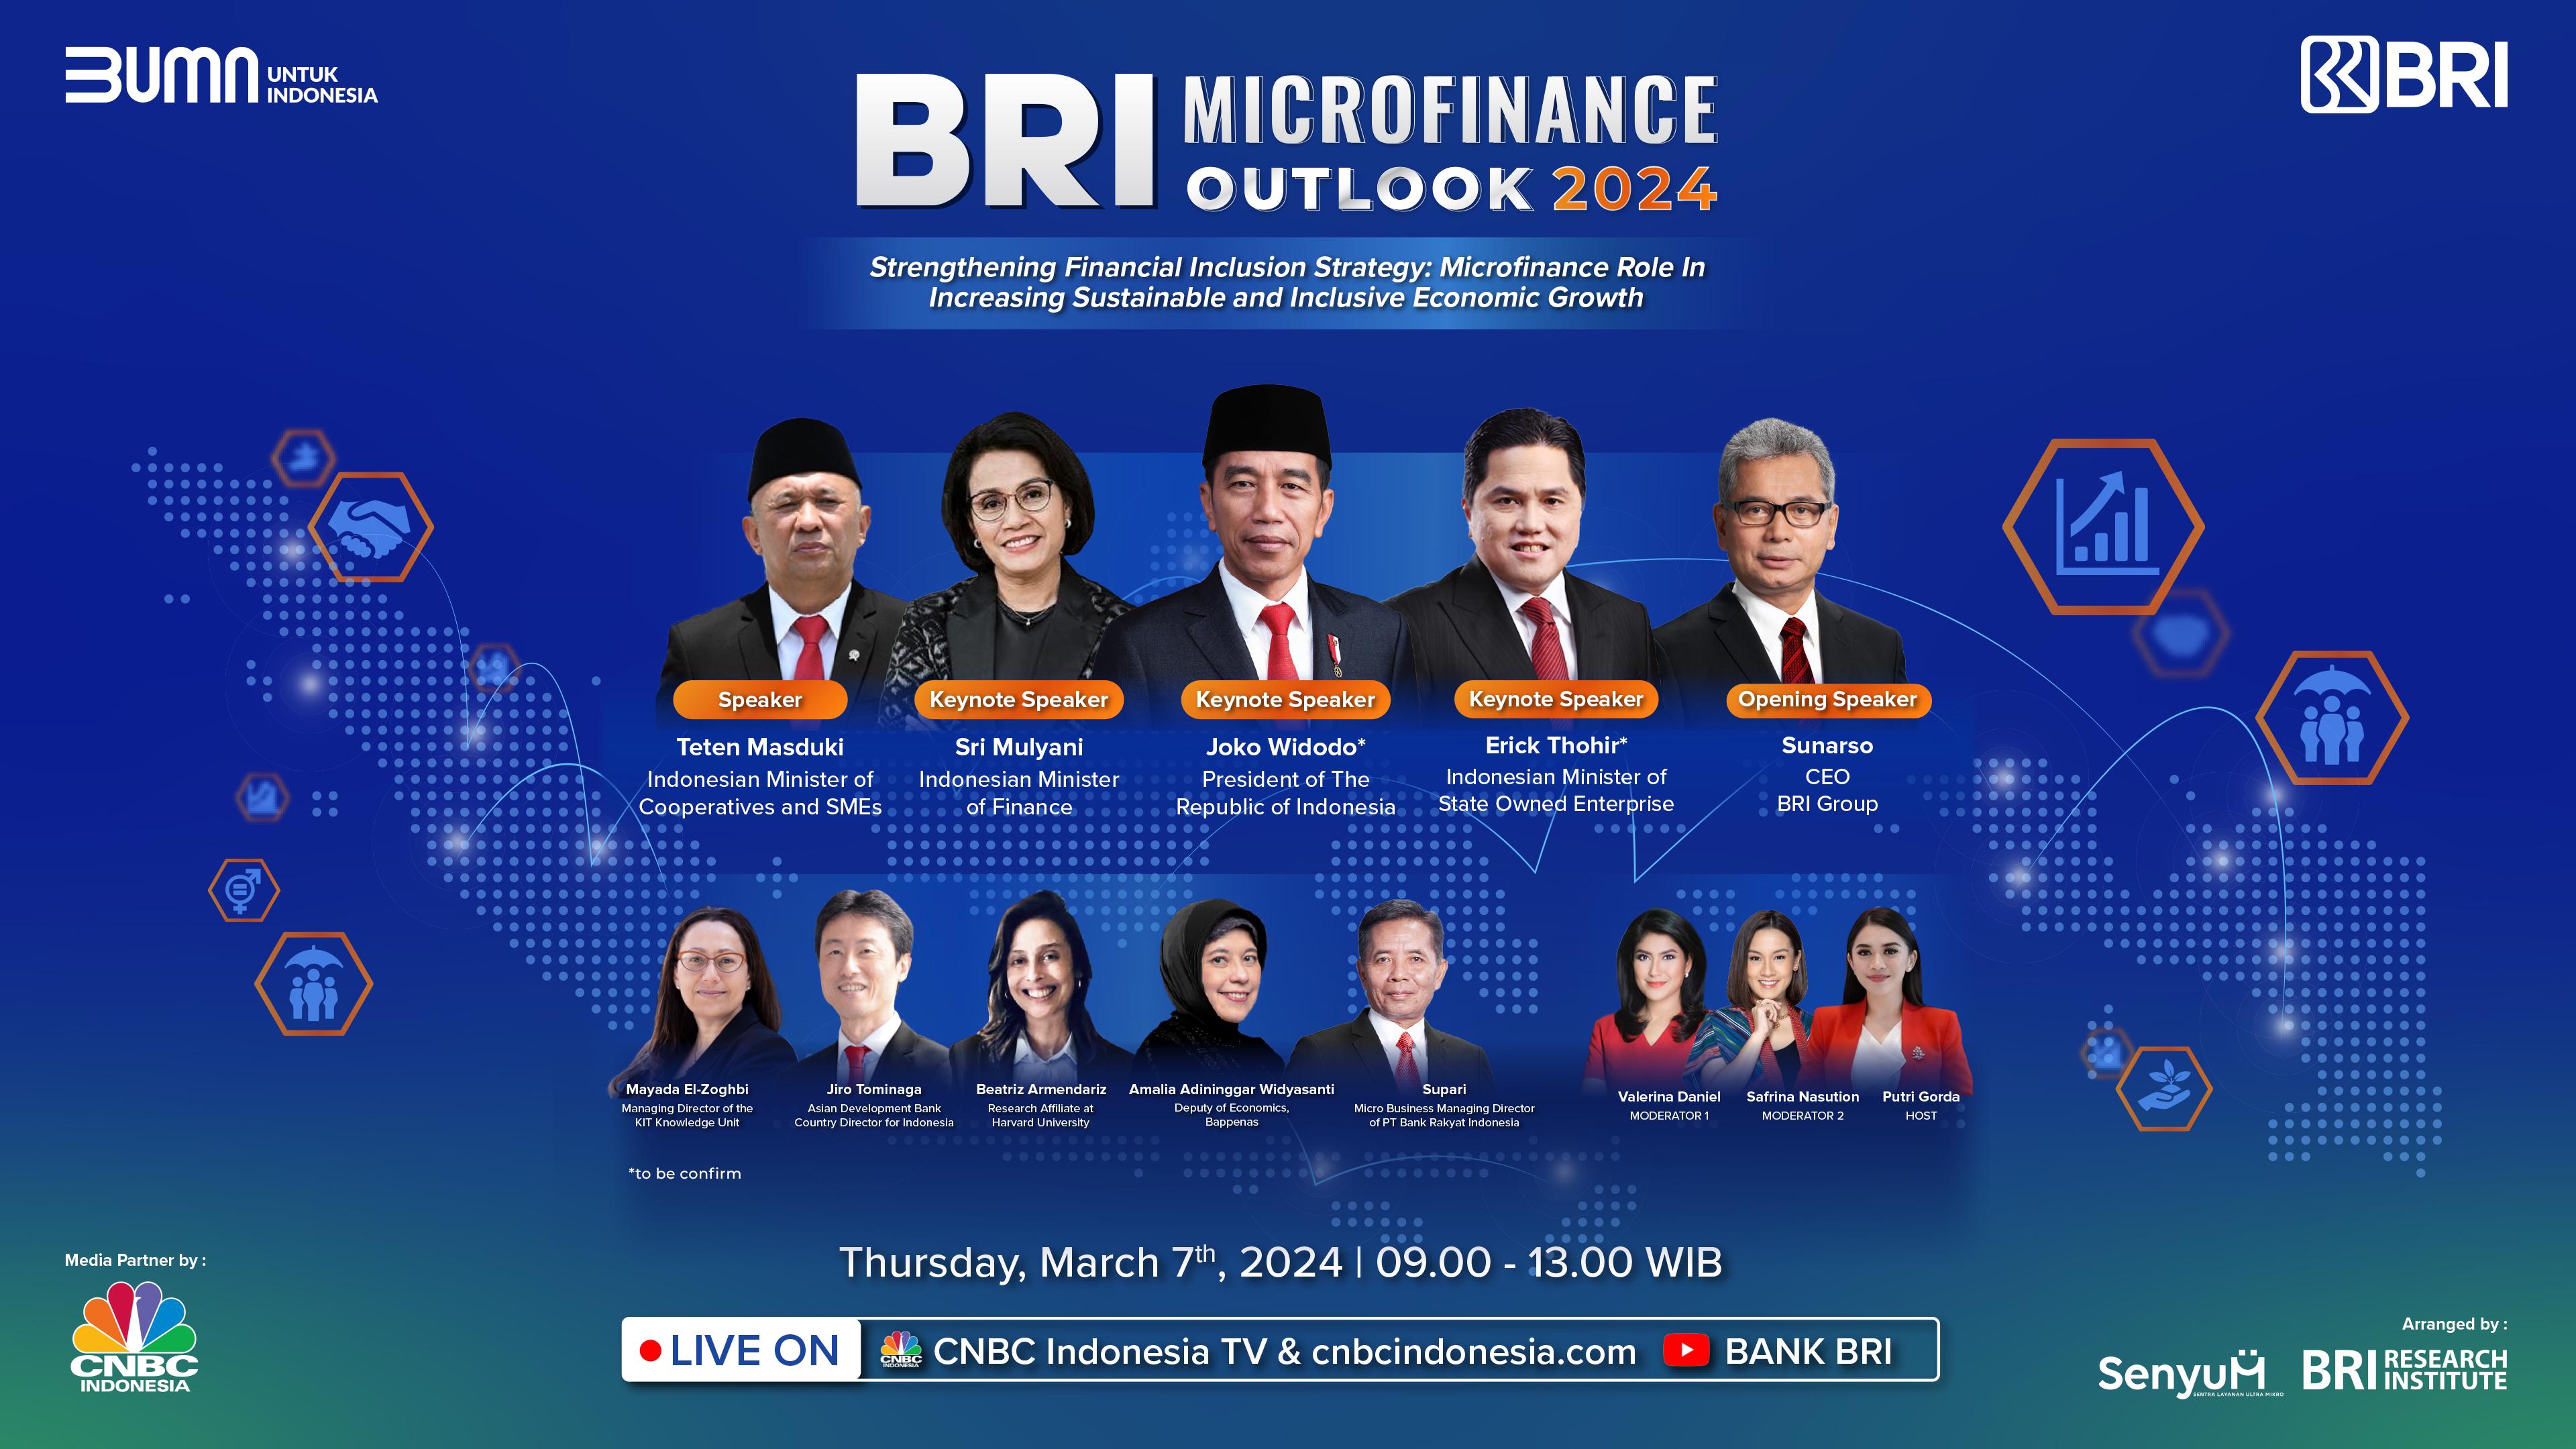 BRI Microfinance Outlook 2024 Angkat Strategi Memperkuat Inklusi Keuangan Pertumbuhan Ekonomi Berkelanjutan